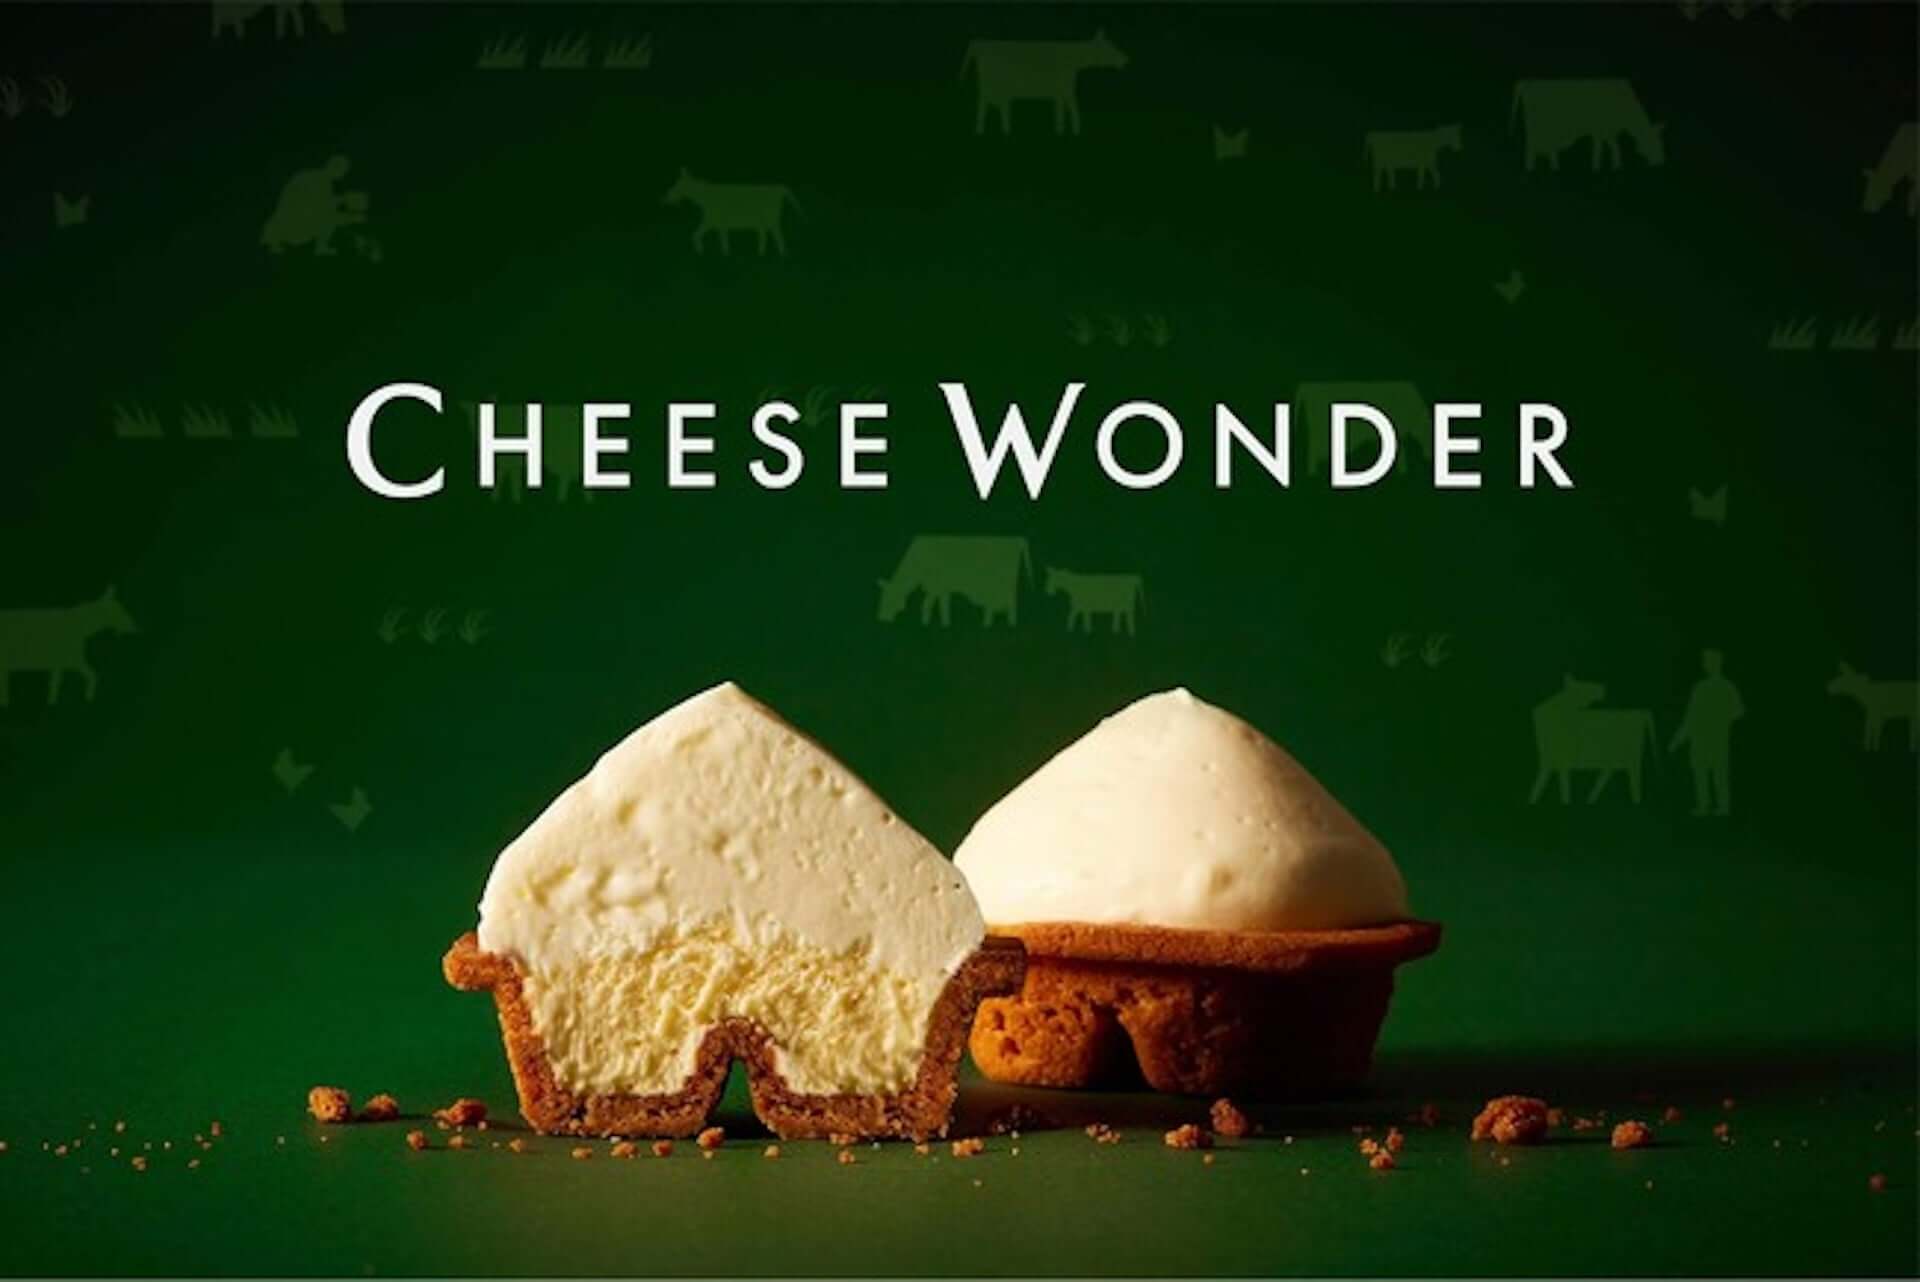 2層の生チーズムースを楽しめる“発明的チーズケーキ”『CHEESE WONDER』が販売数増産！東京・福岡にてポップアップイベントも開催中 gourmet210312_cheesewonder_10-1920x1282